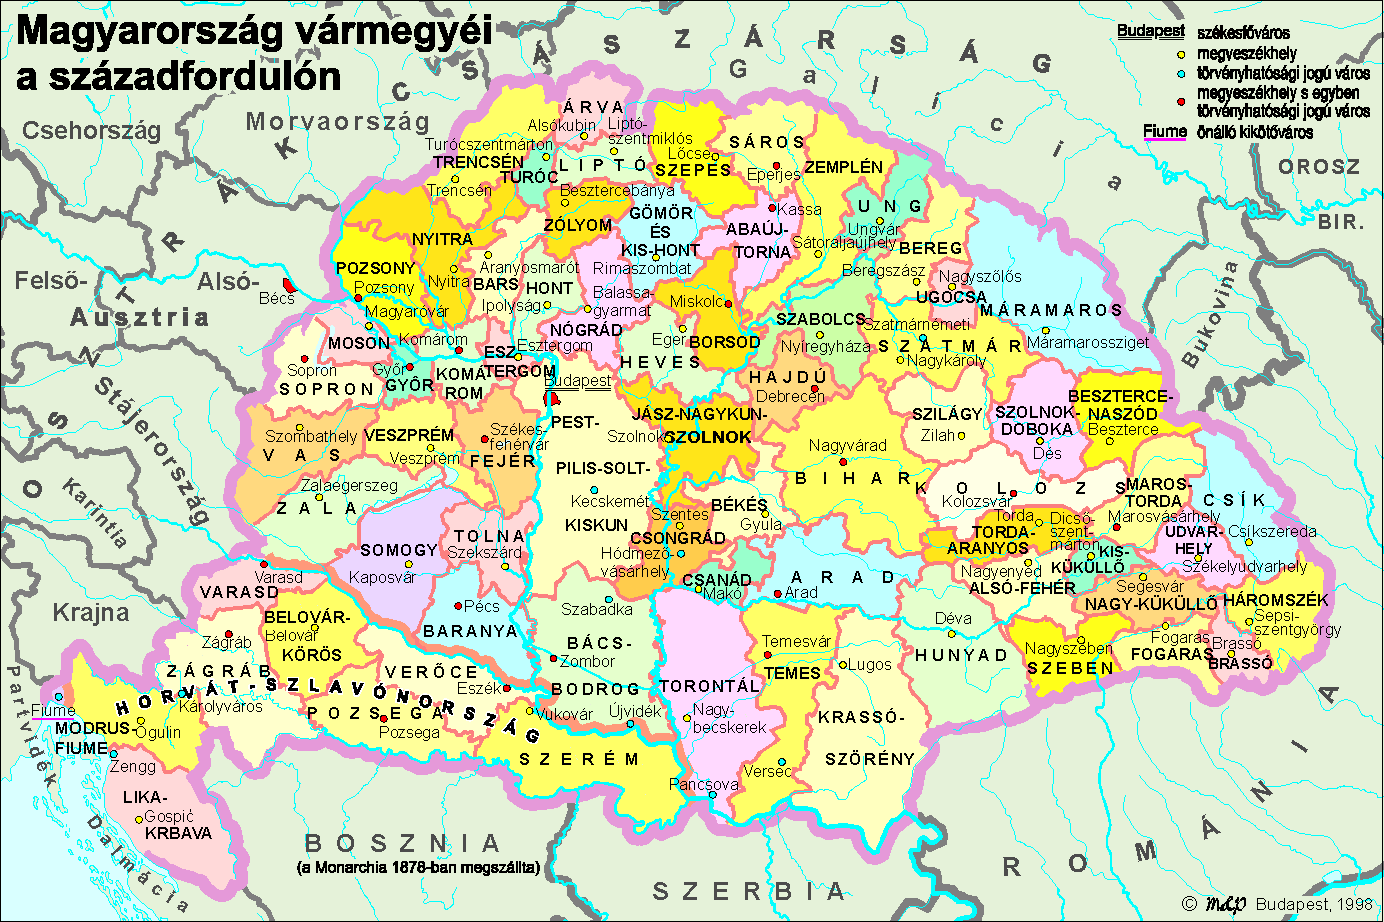 magyarország vármegyéi térkép Osztrák Magyar Monarchia (1910) magyarország vármegyéi térkép